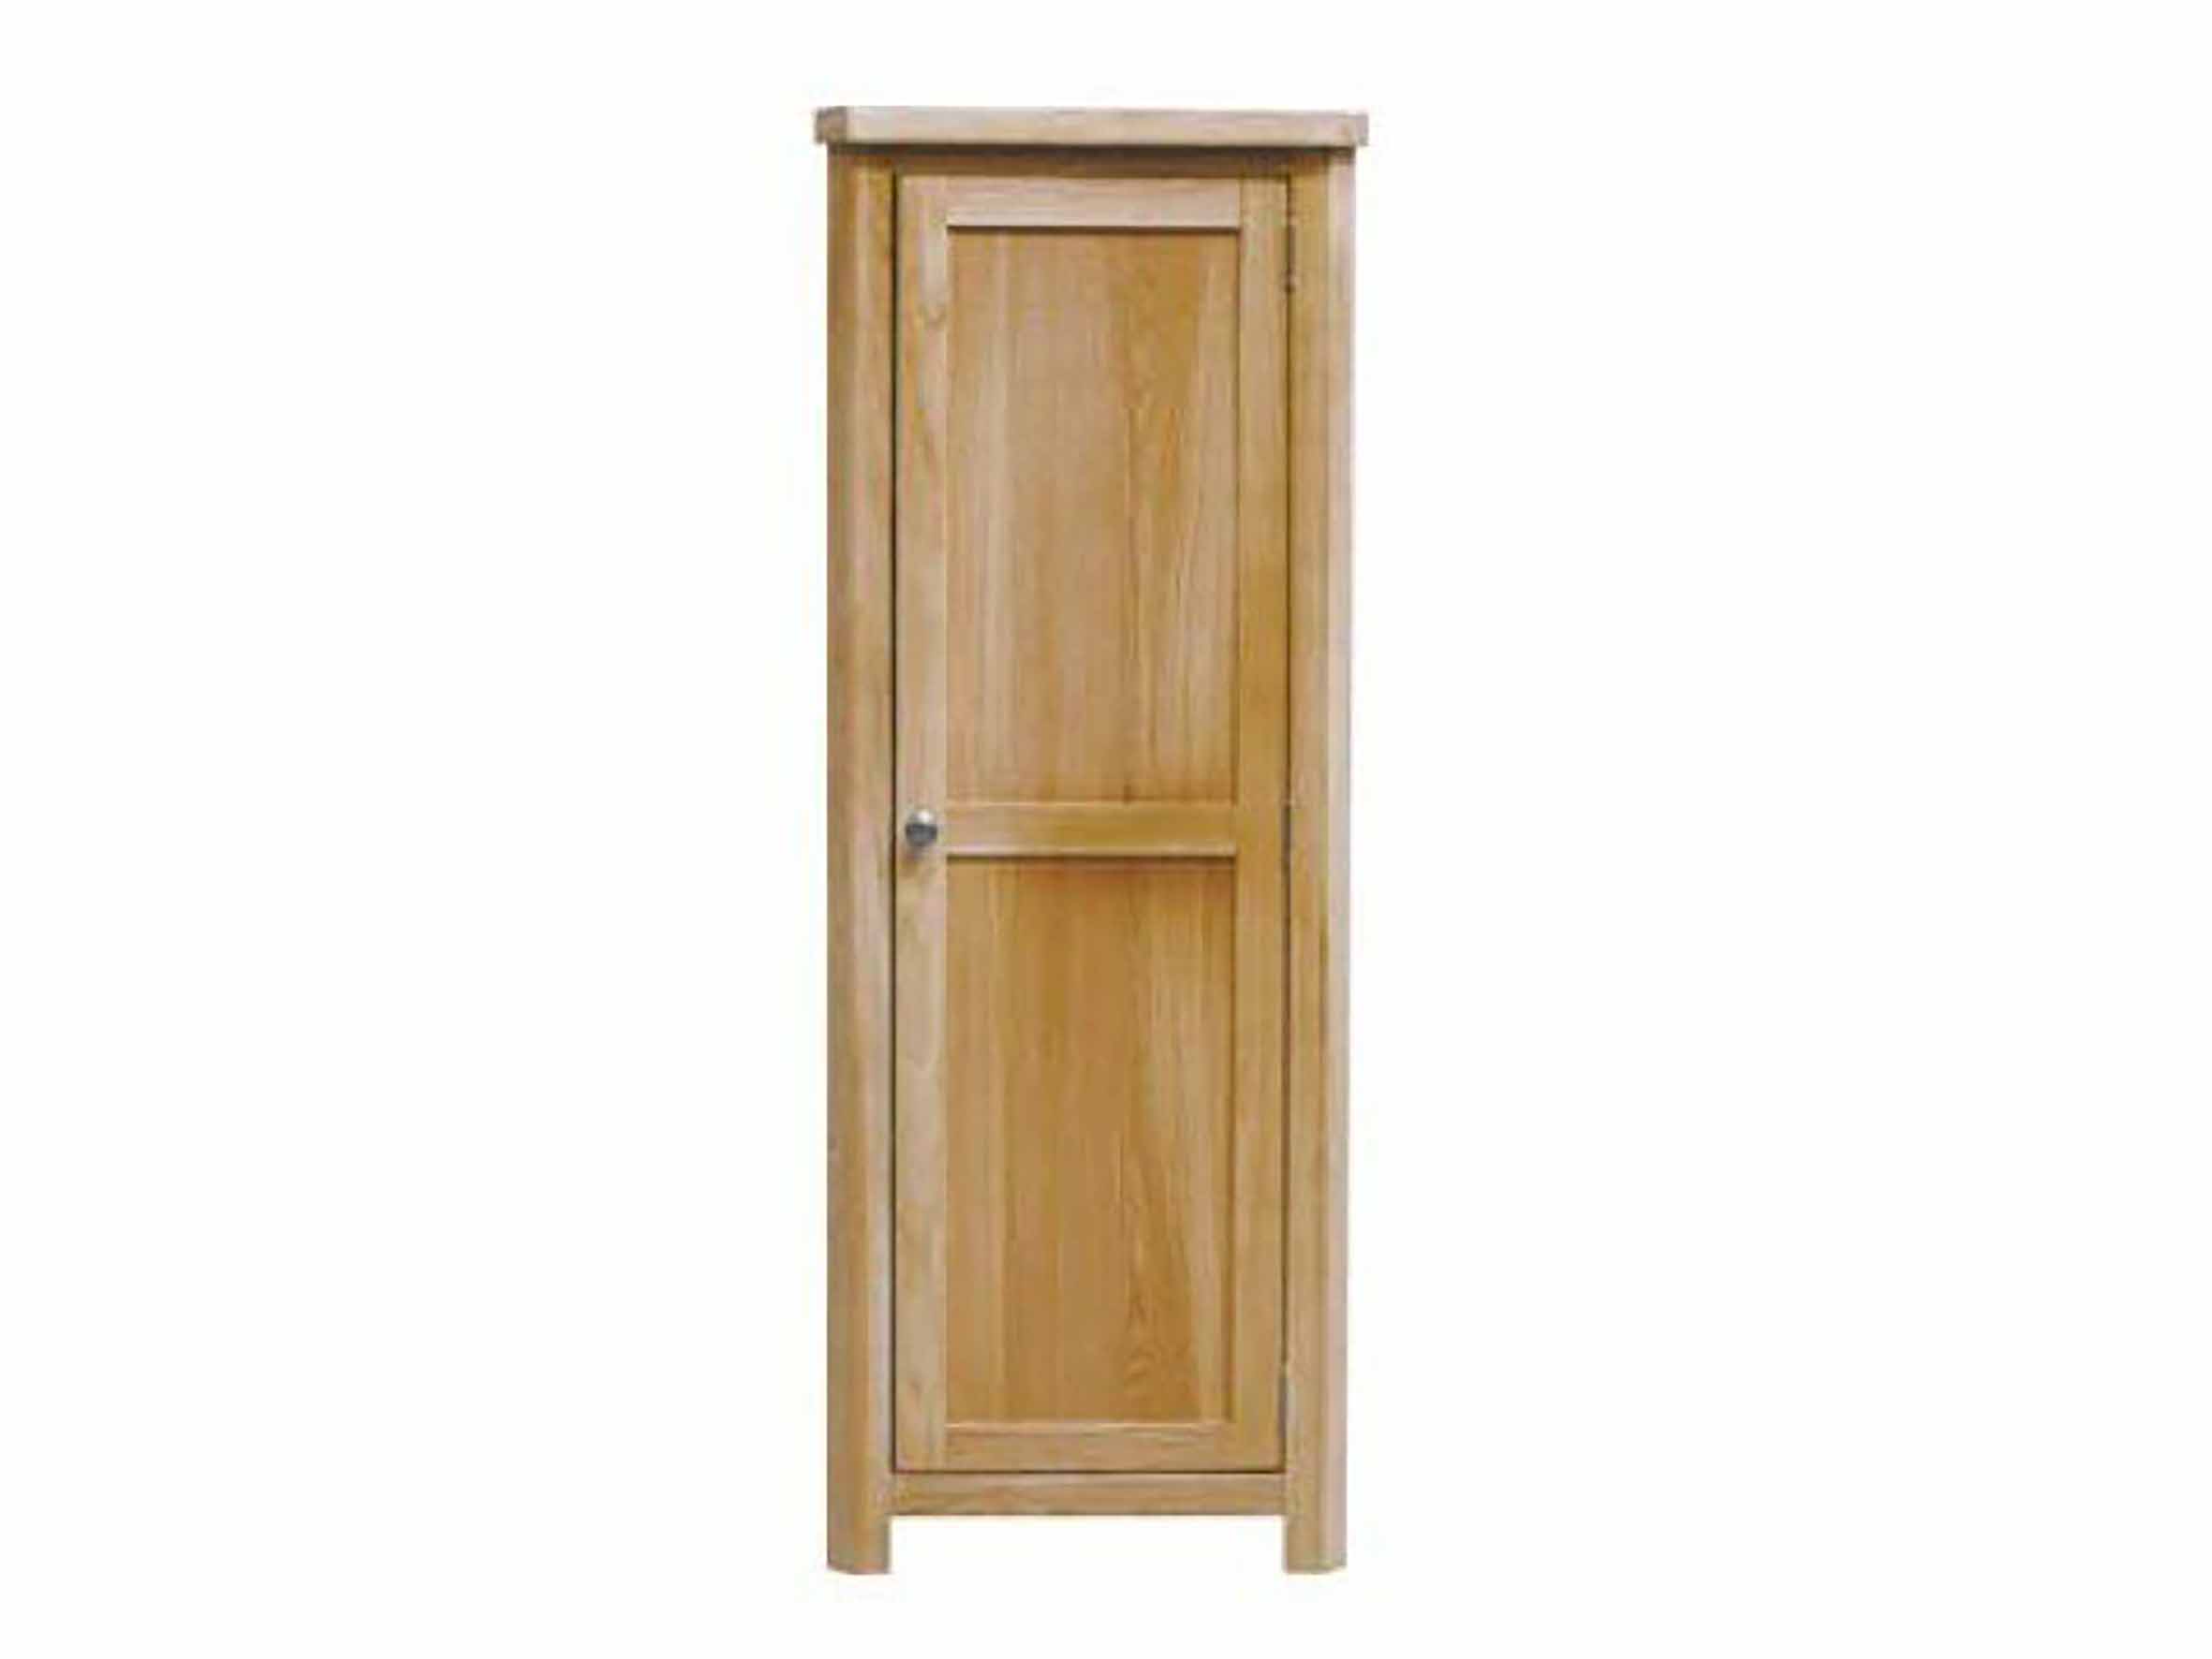 Eton Solid Oak Large Corner Unit from Top Secret Furniture